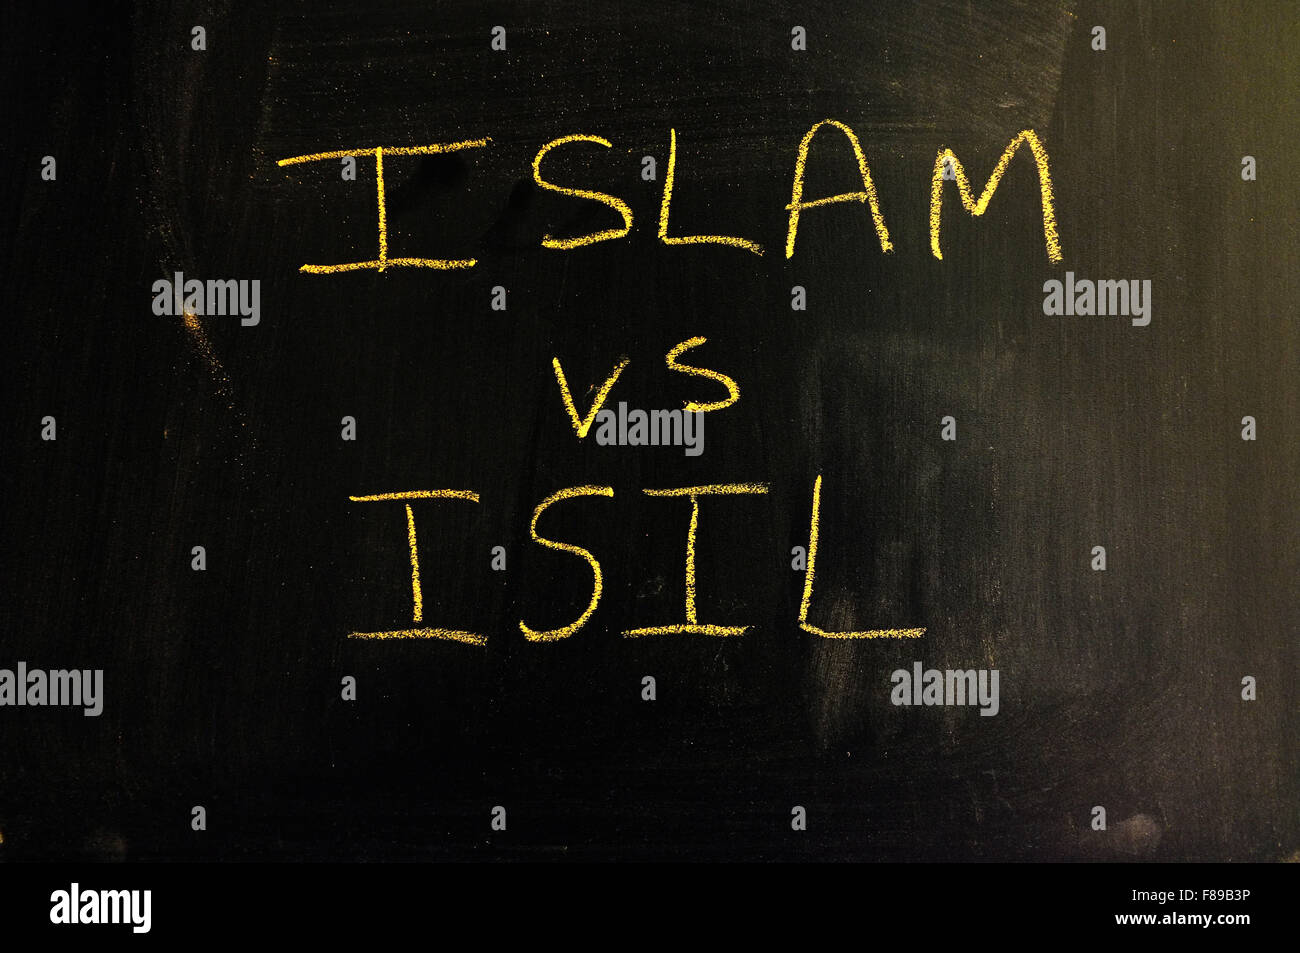 Islam Vs ISIL mit Kreide auf eine Tafel geschrieben. Stockfoto